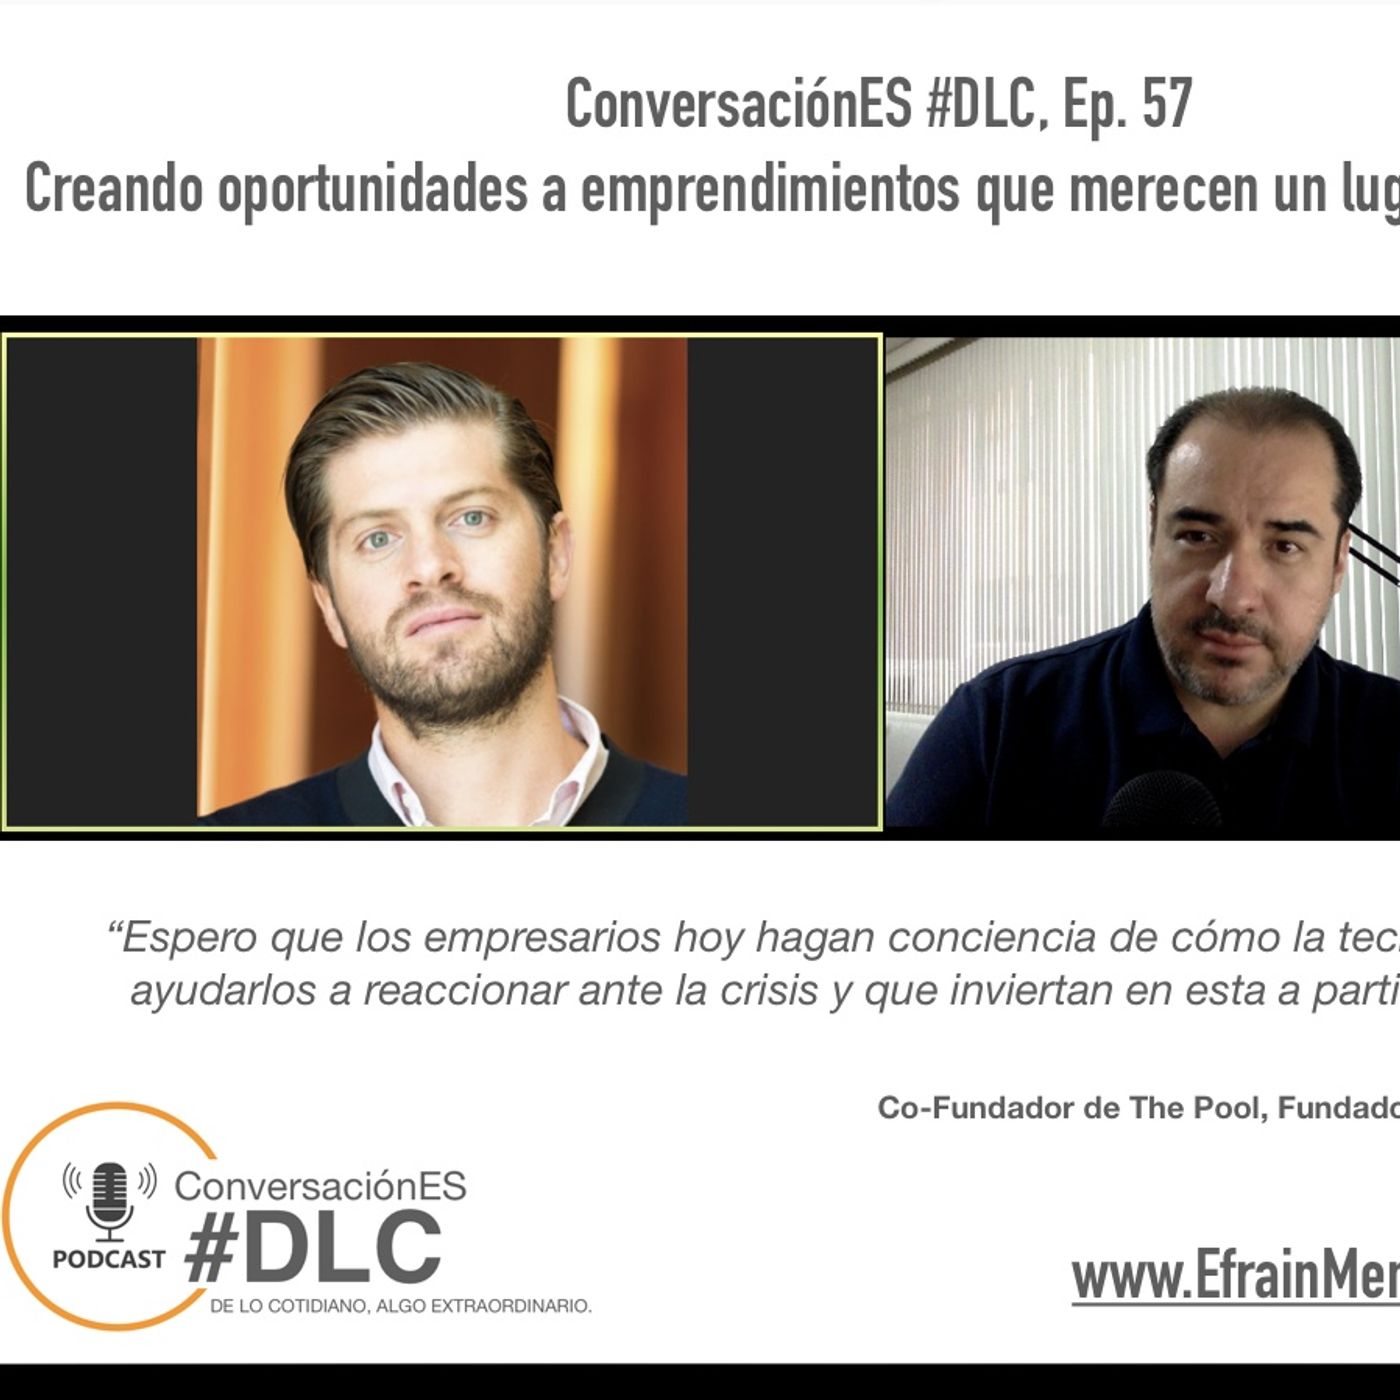 Episodio 57 - ConversaciónES #DLC con Luis X. Barrios